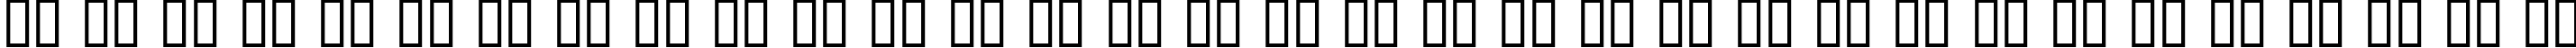 Пример написания русского алфавита шрифтом 20th Century Font